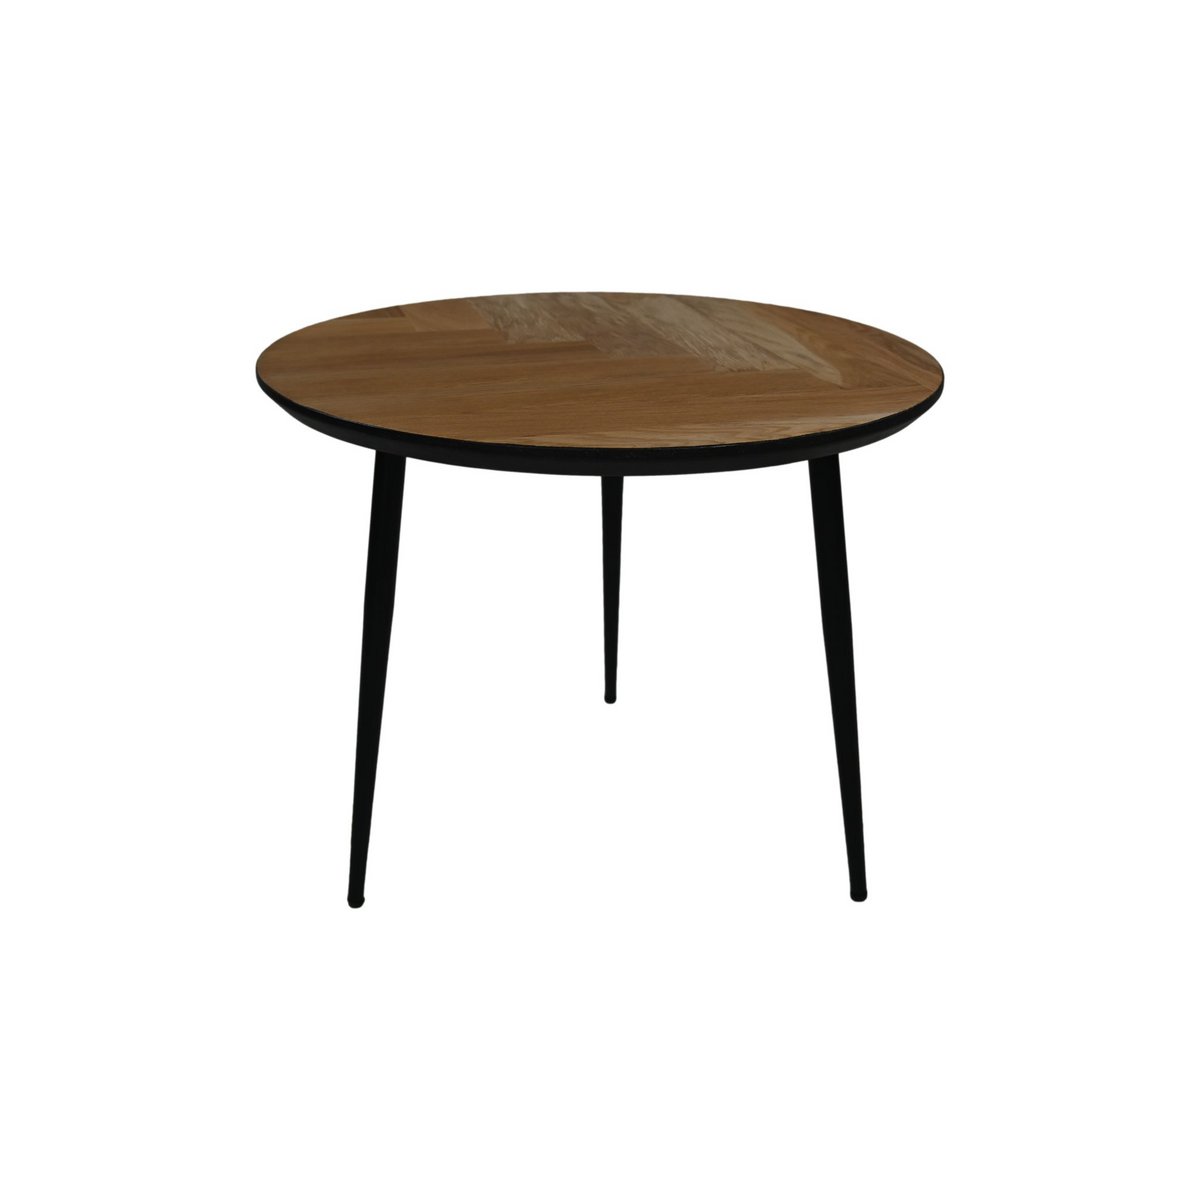 Ronde vimba salontafel van eikenhout met drie zwarte metalen poten en zwarte swiss edge randafwerking